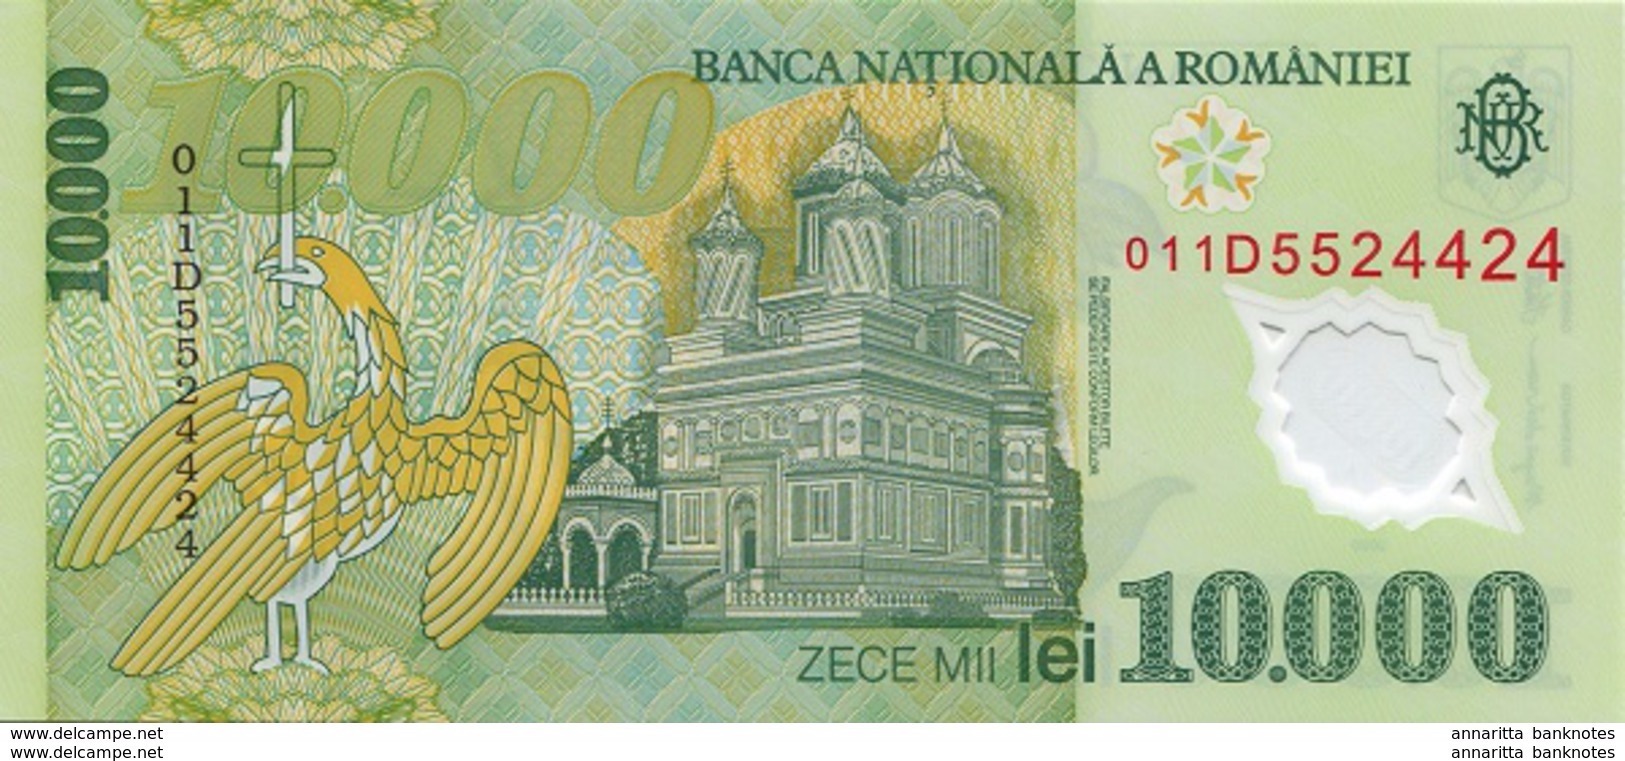 ROMANIA 10000 LEI 2000 (2001) P-112b UNC PREFIX 01 [RO273b] - Romania